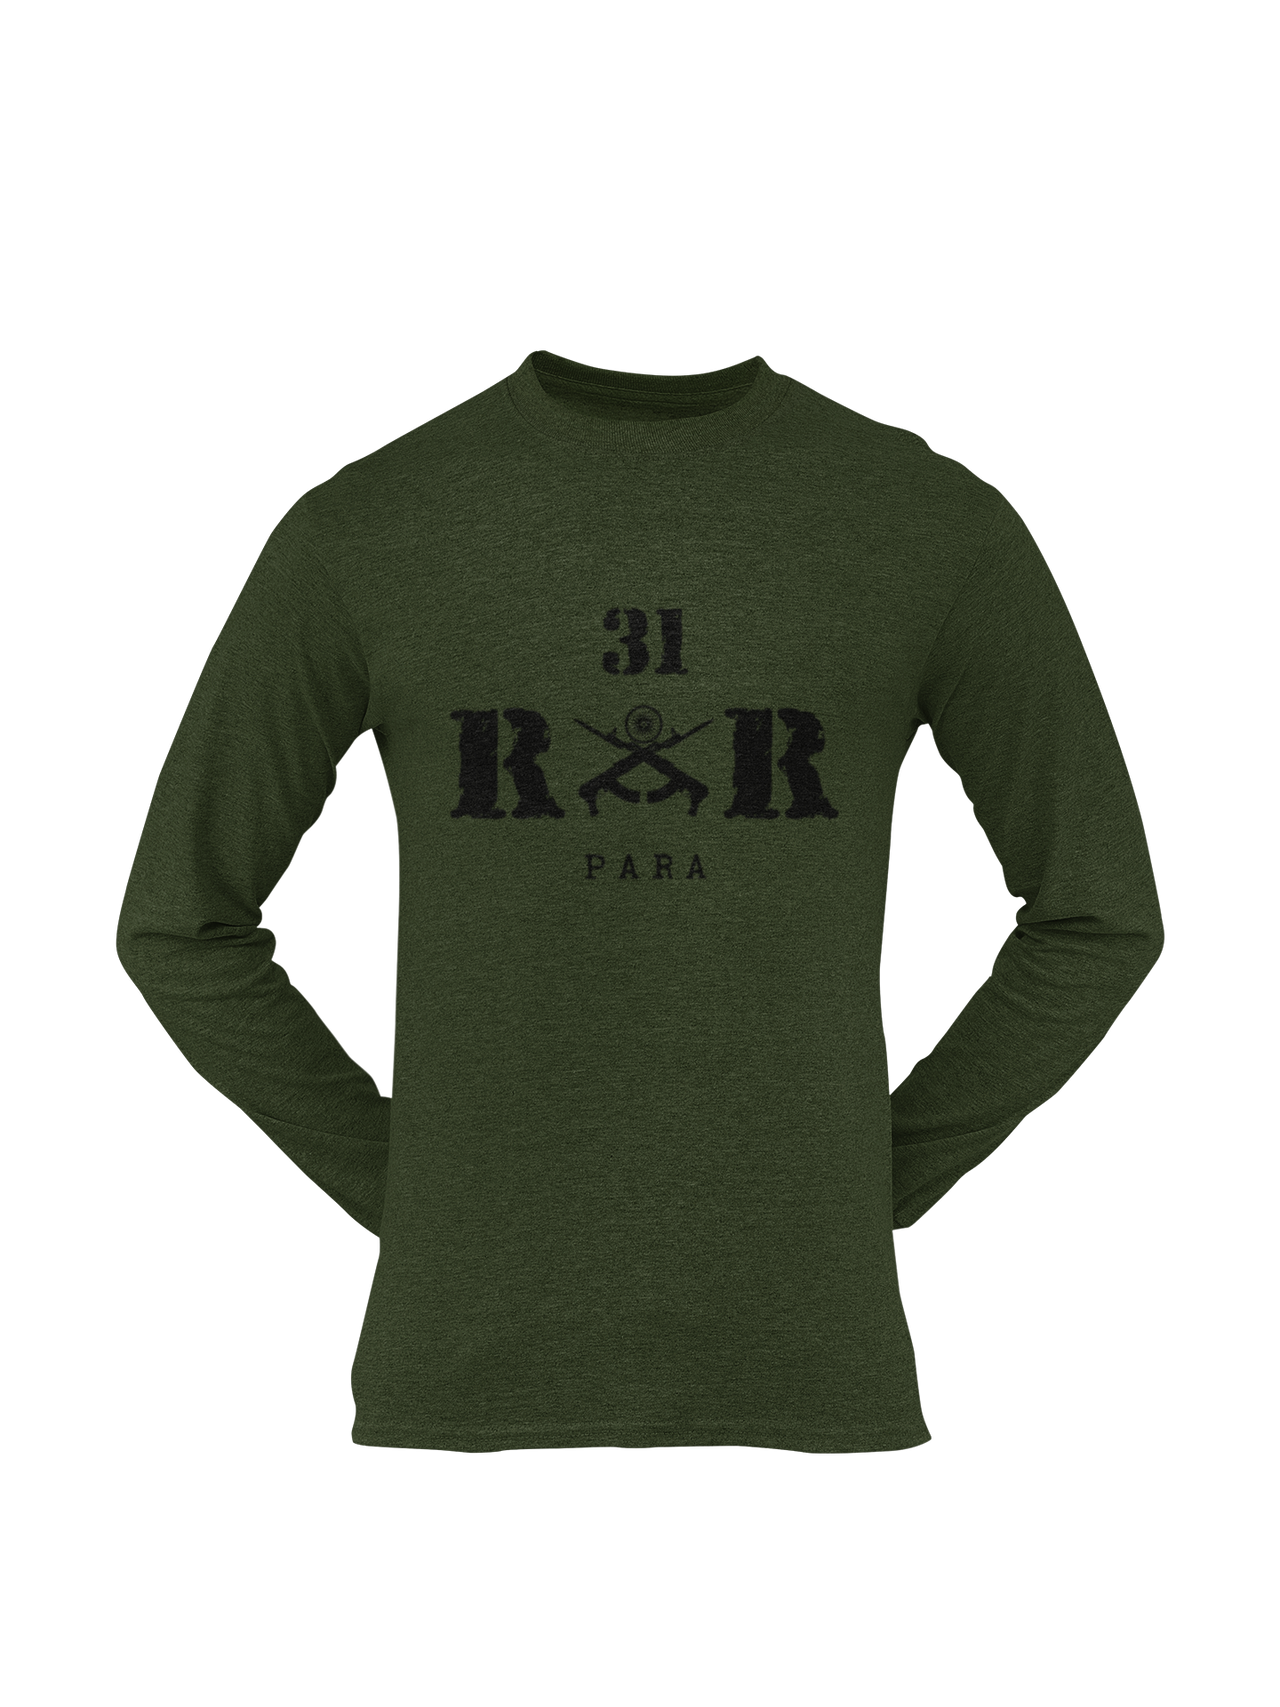 Rashtriya Rifles T-shirt - 31 RR Para (Men)